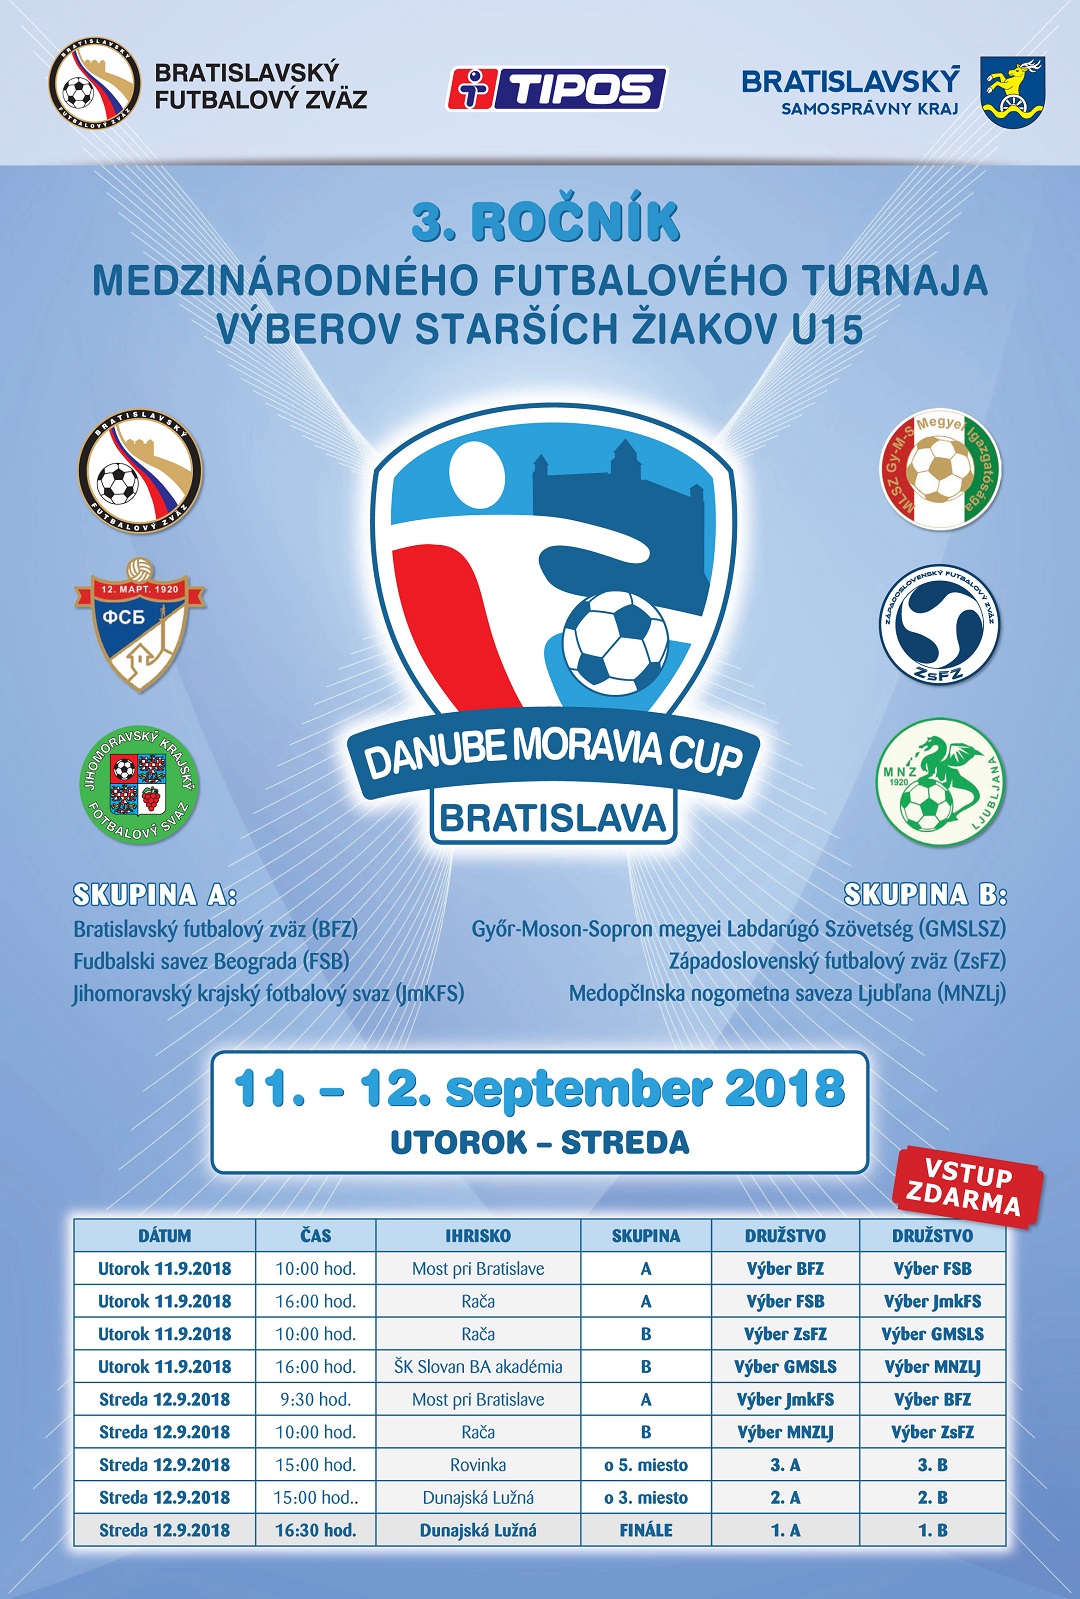 DANUBE Moravia Cup plagat 2018